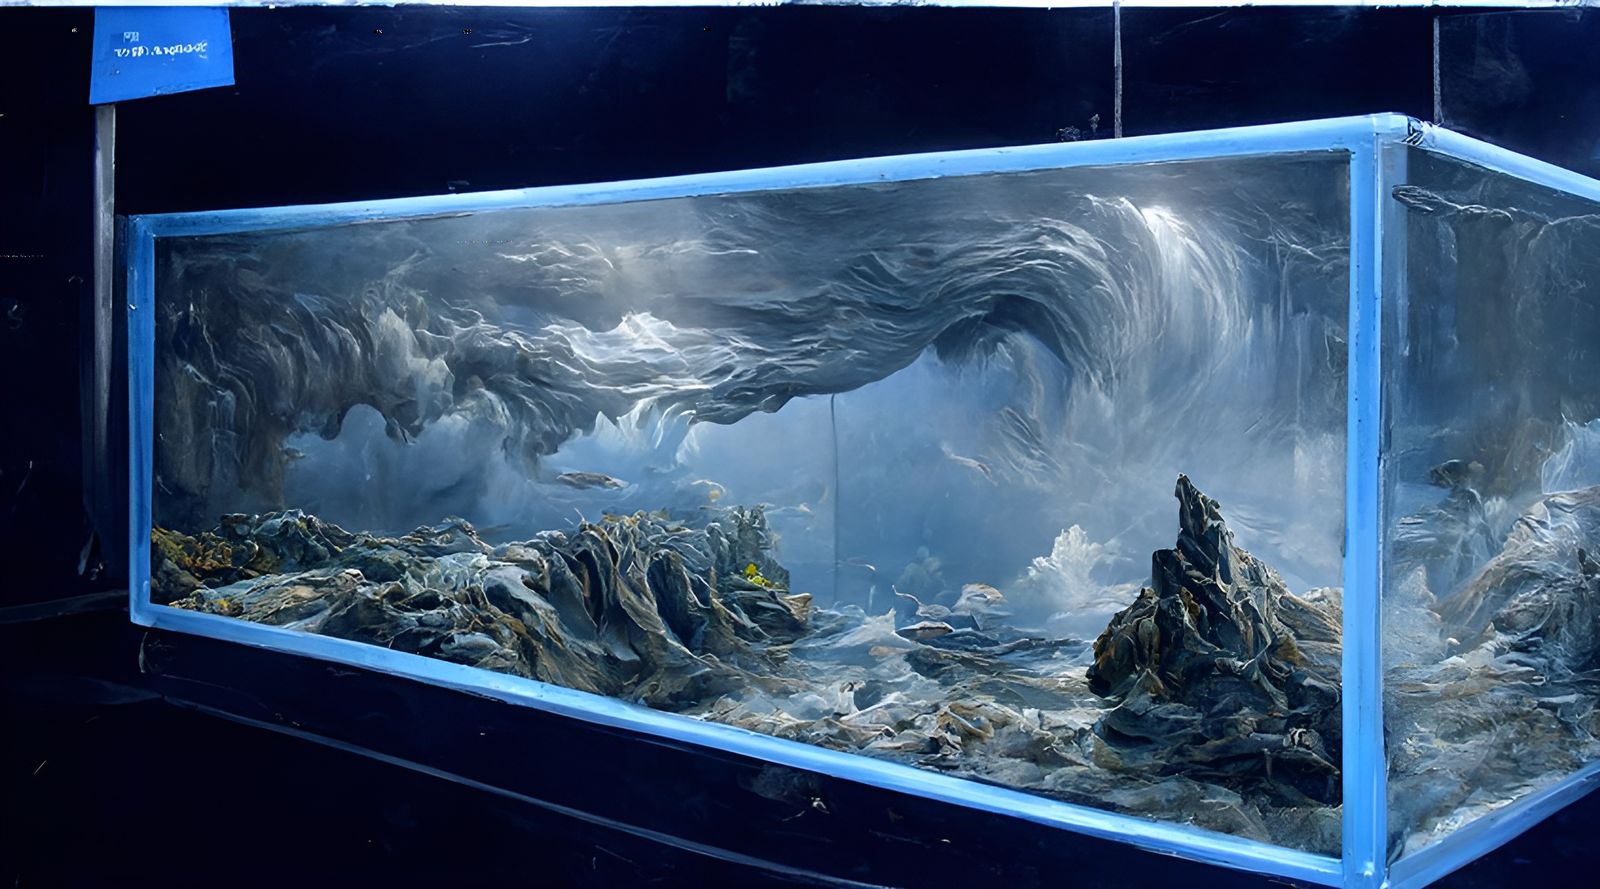 Ocean Disaster in a Fish Tank